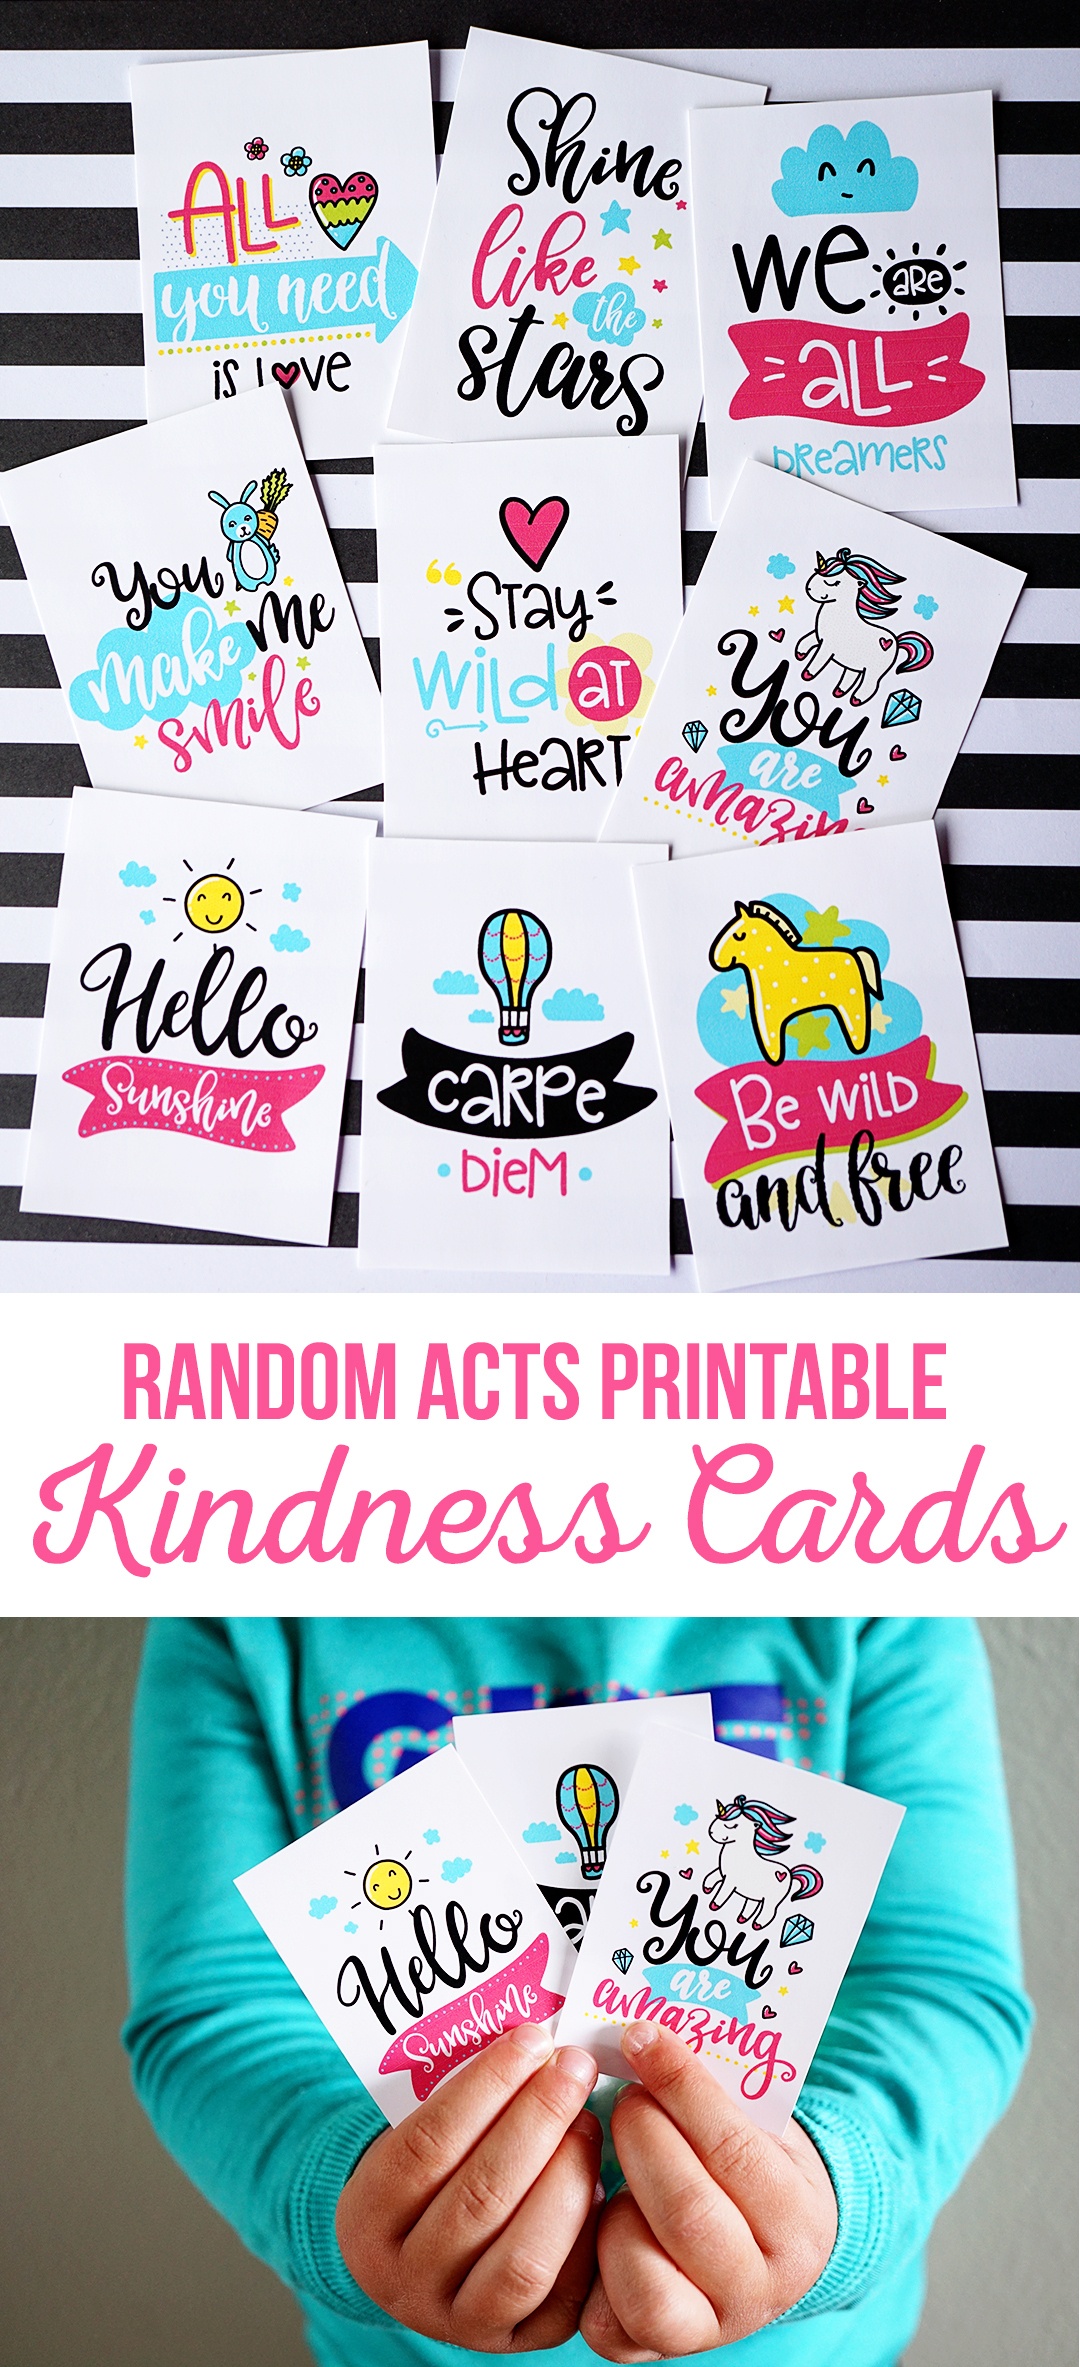 Kindness Cards Printable Free Free Printable